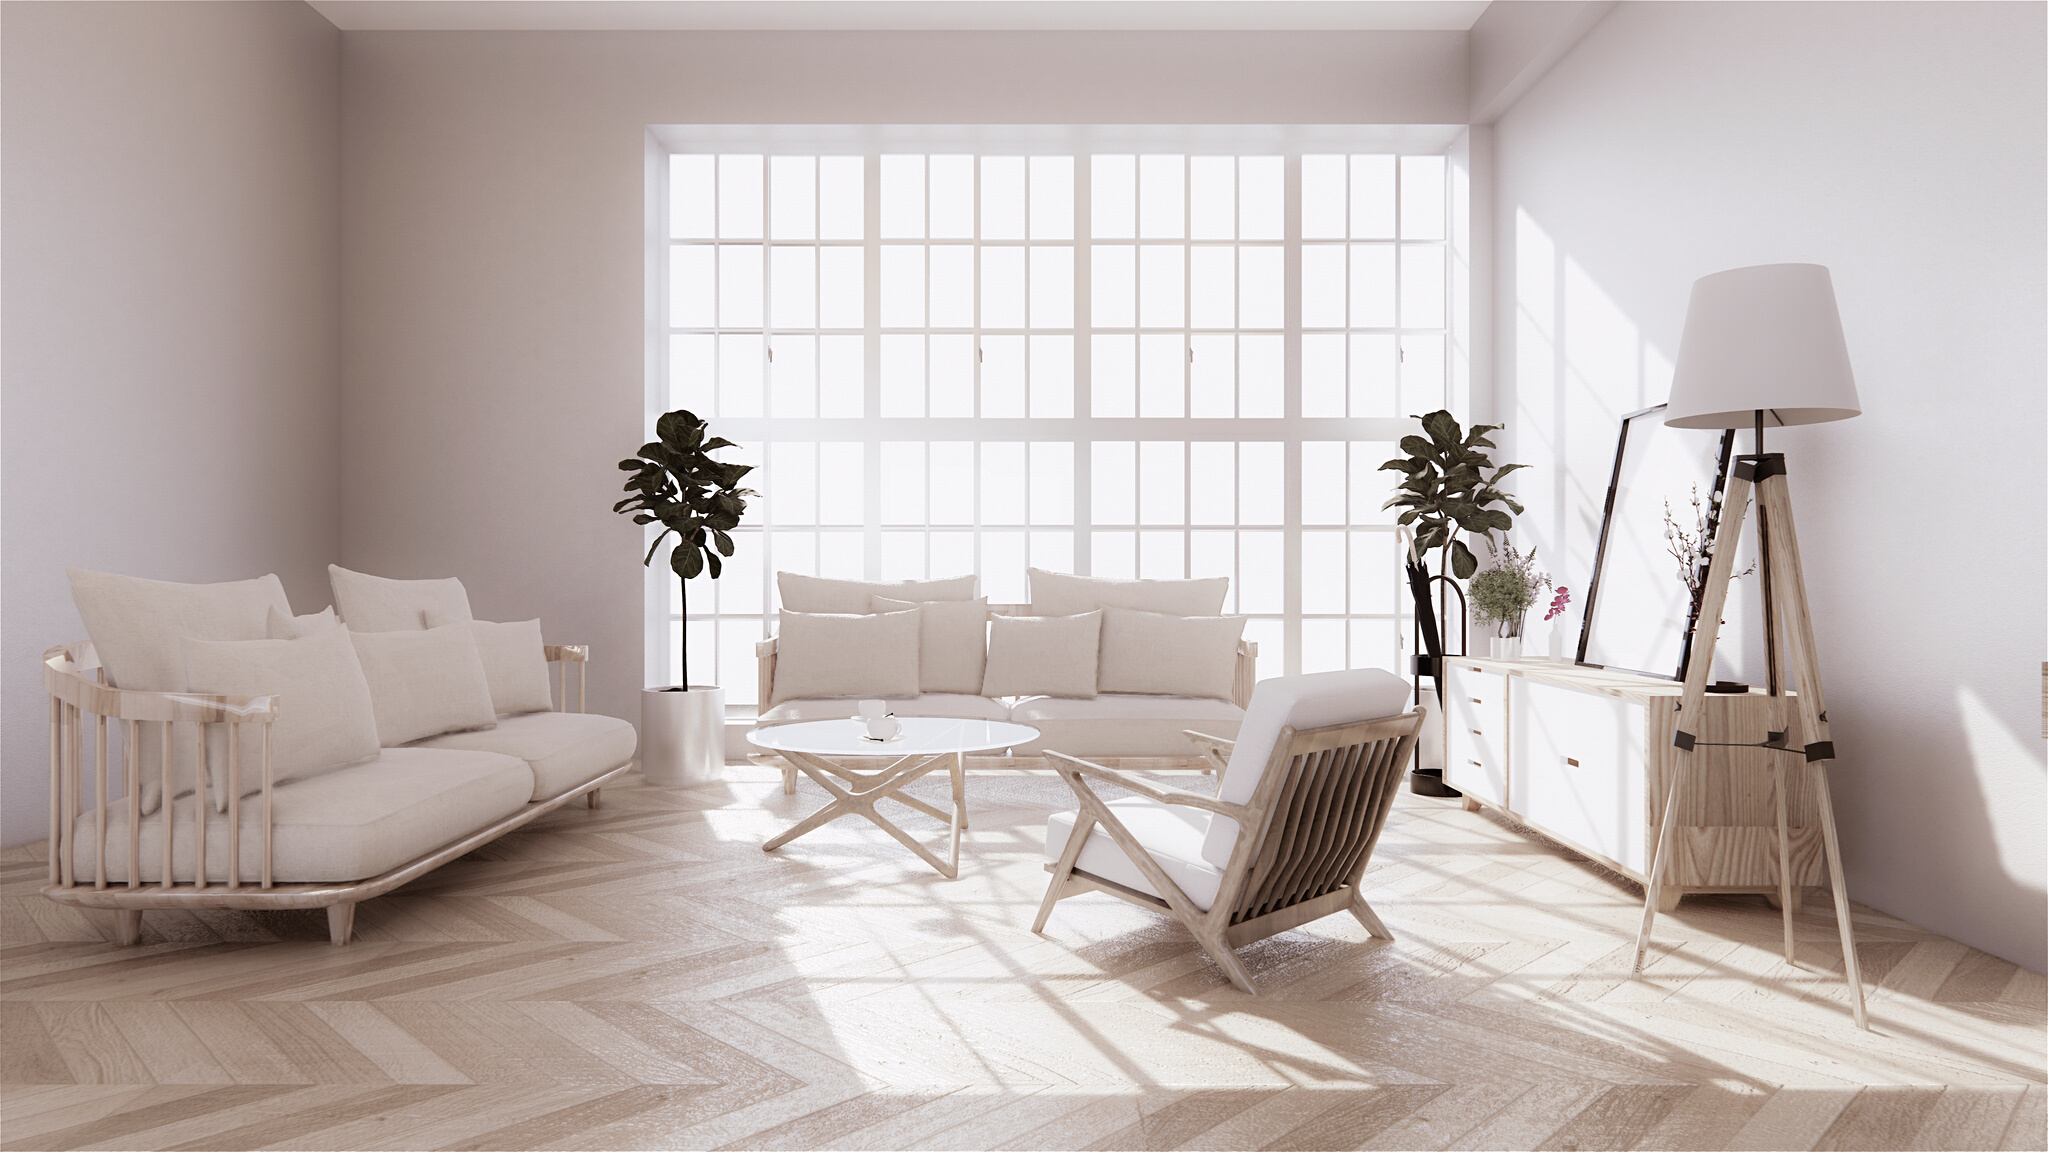 Living Room Design with Wooden Floor